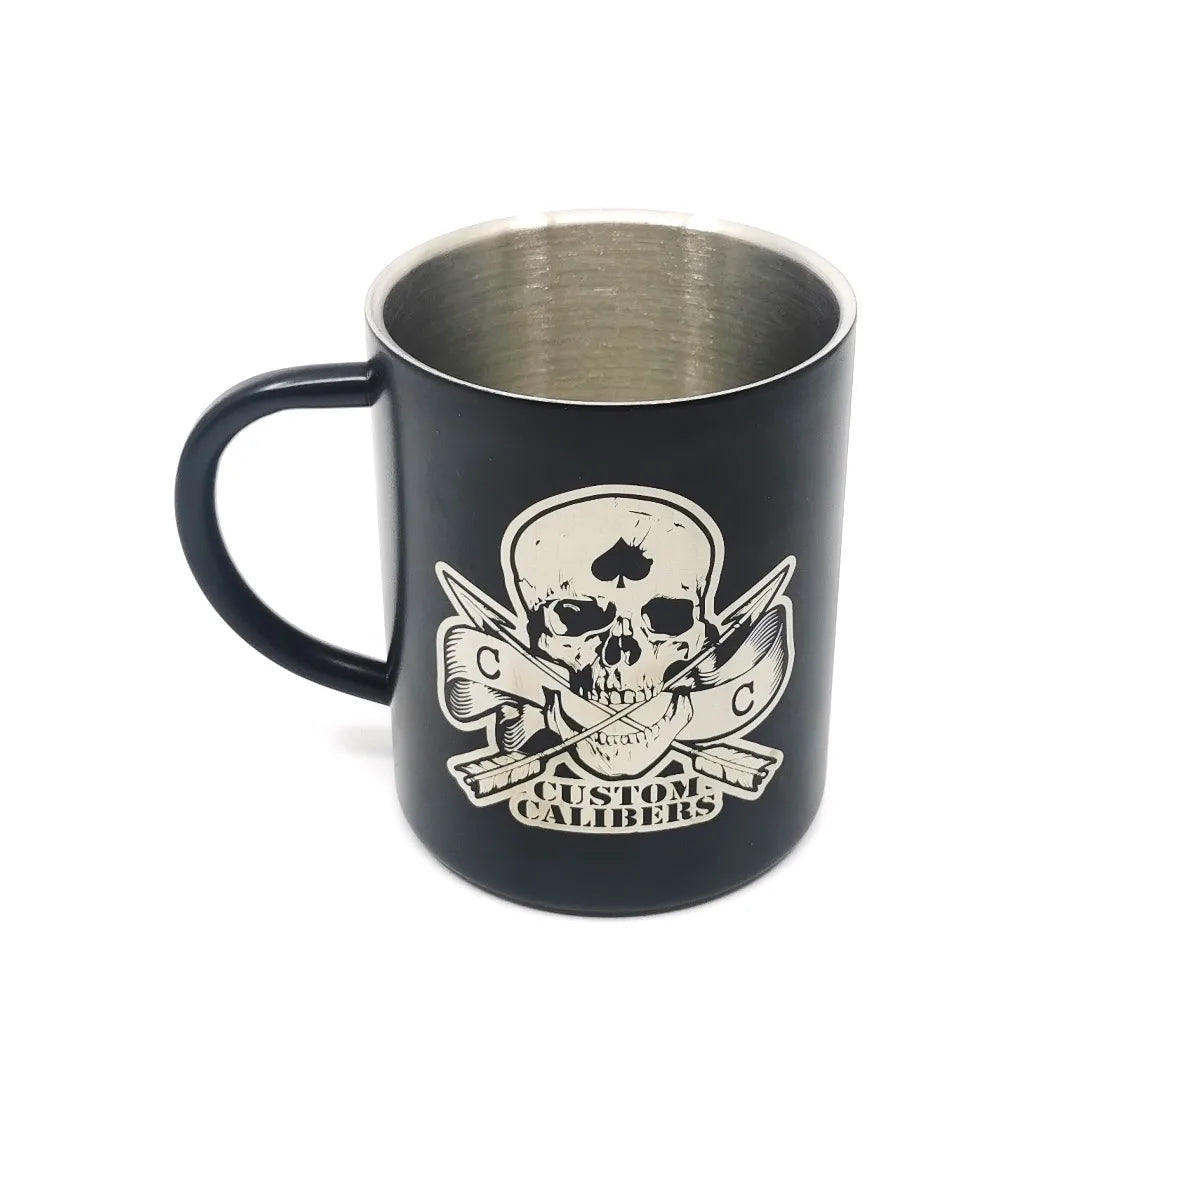 Stainless steel thermos mug